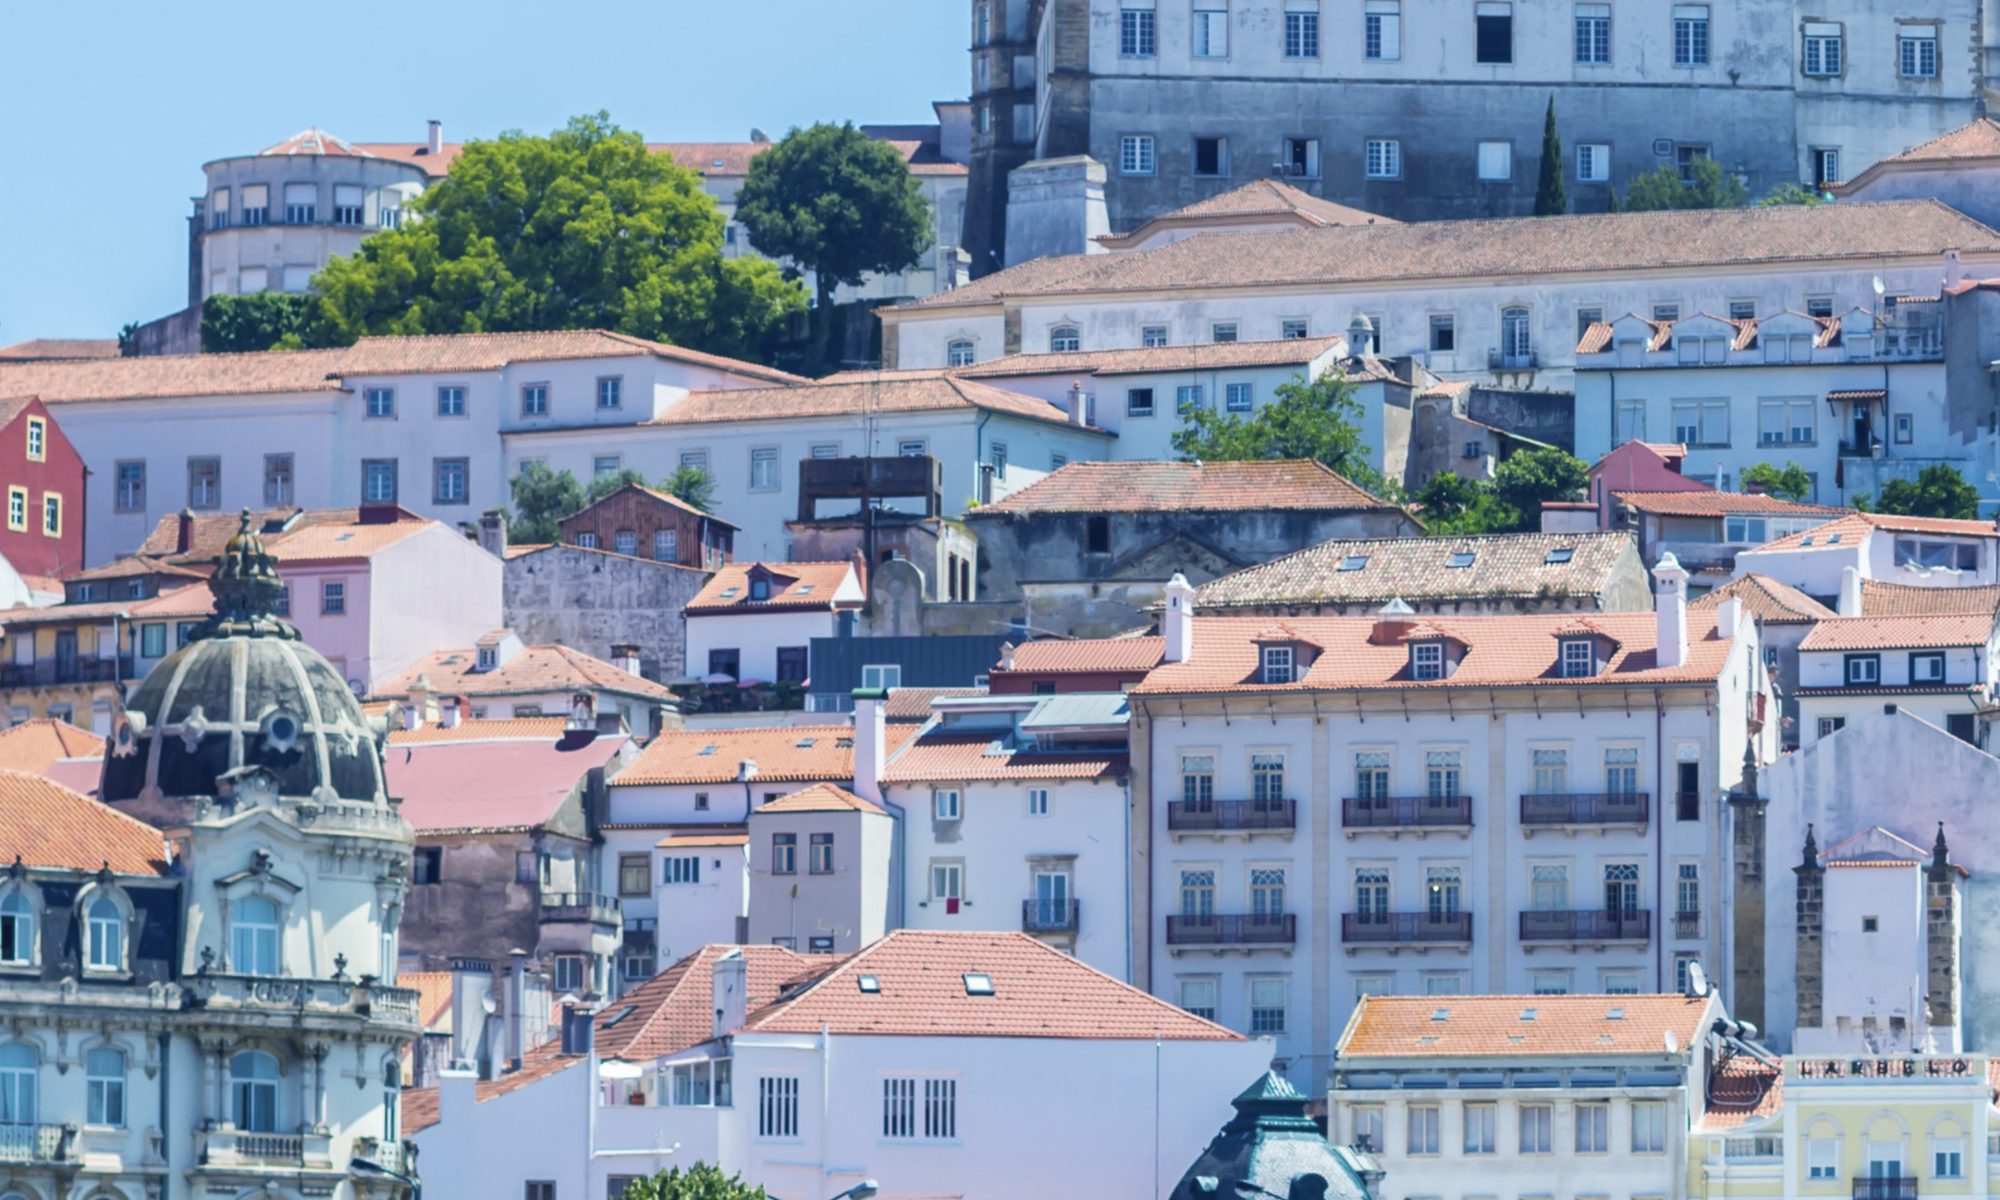 Panorâmica sobre a cidade de Coimbra, com vista distante ampliada sobre vários edifícios